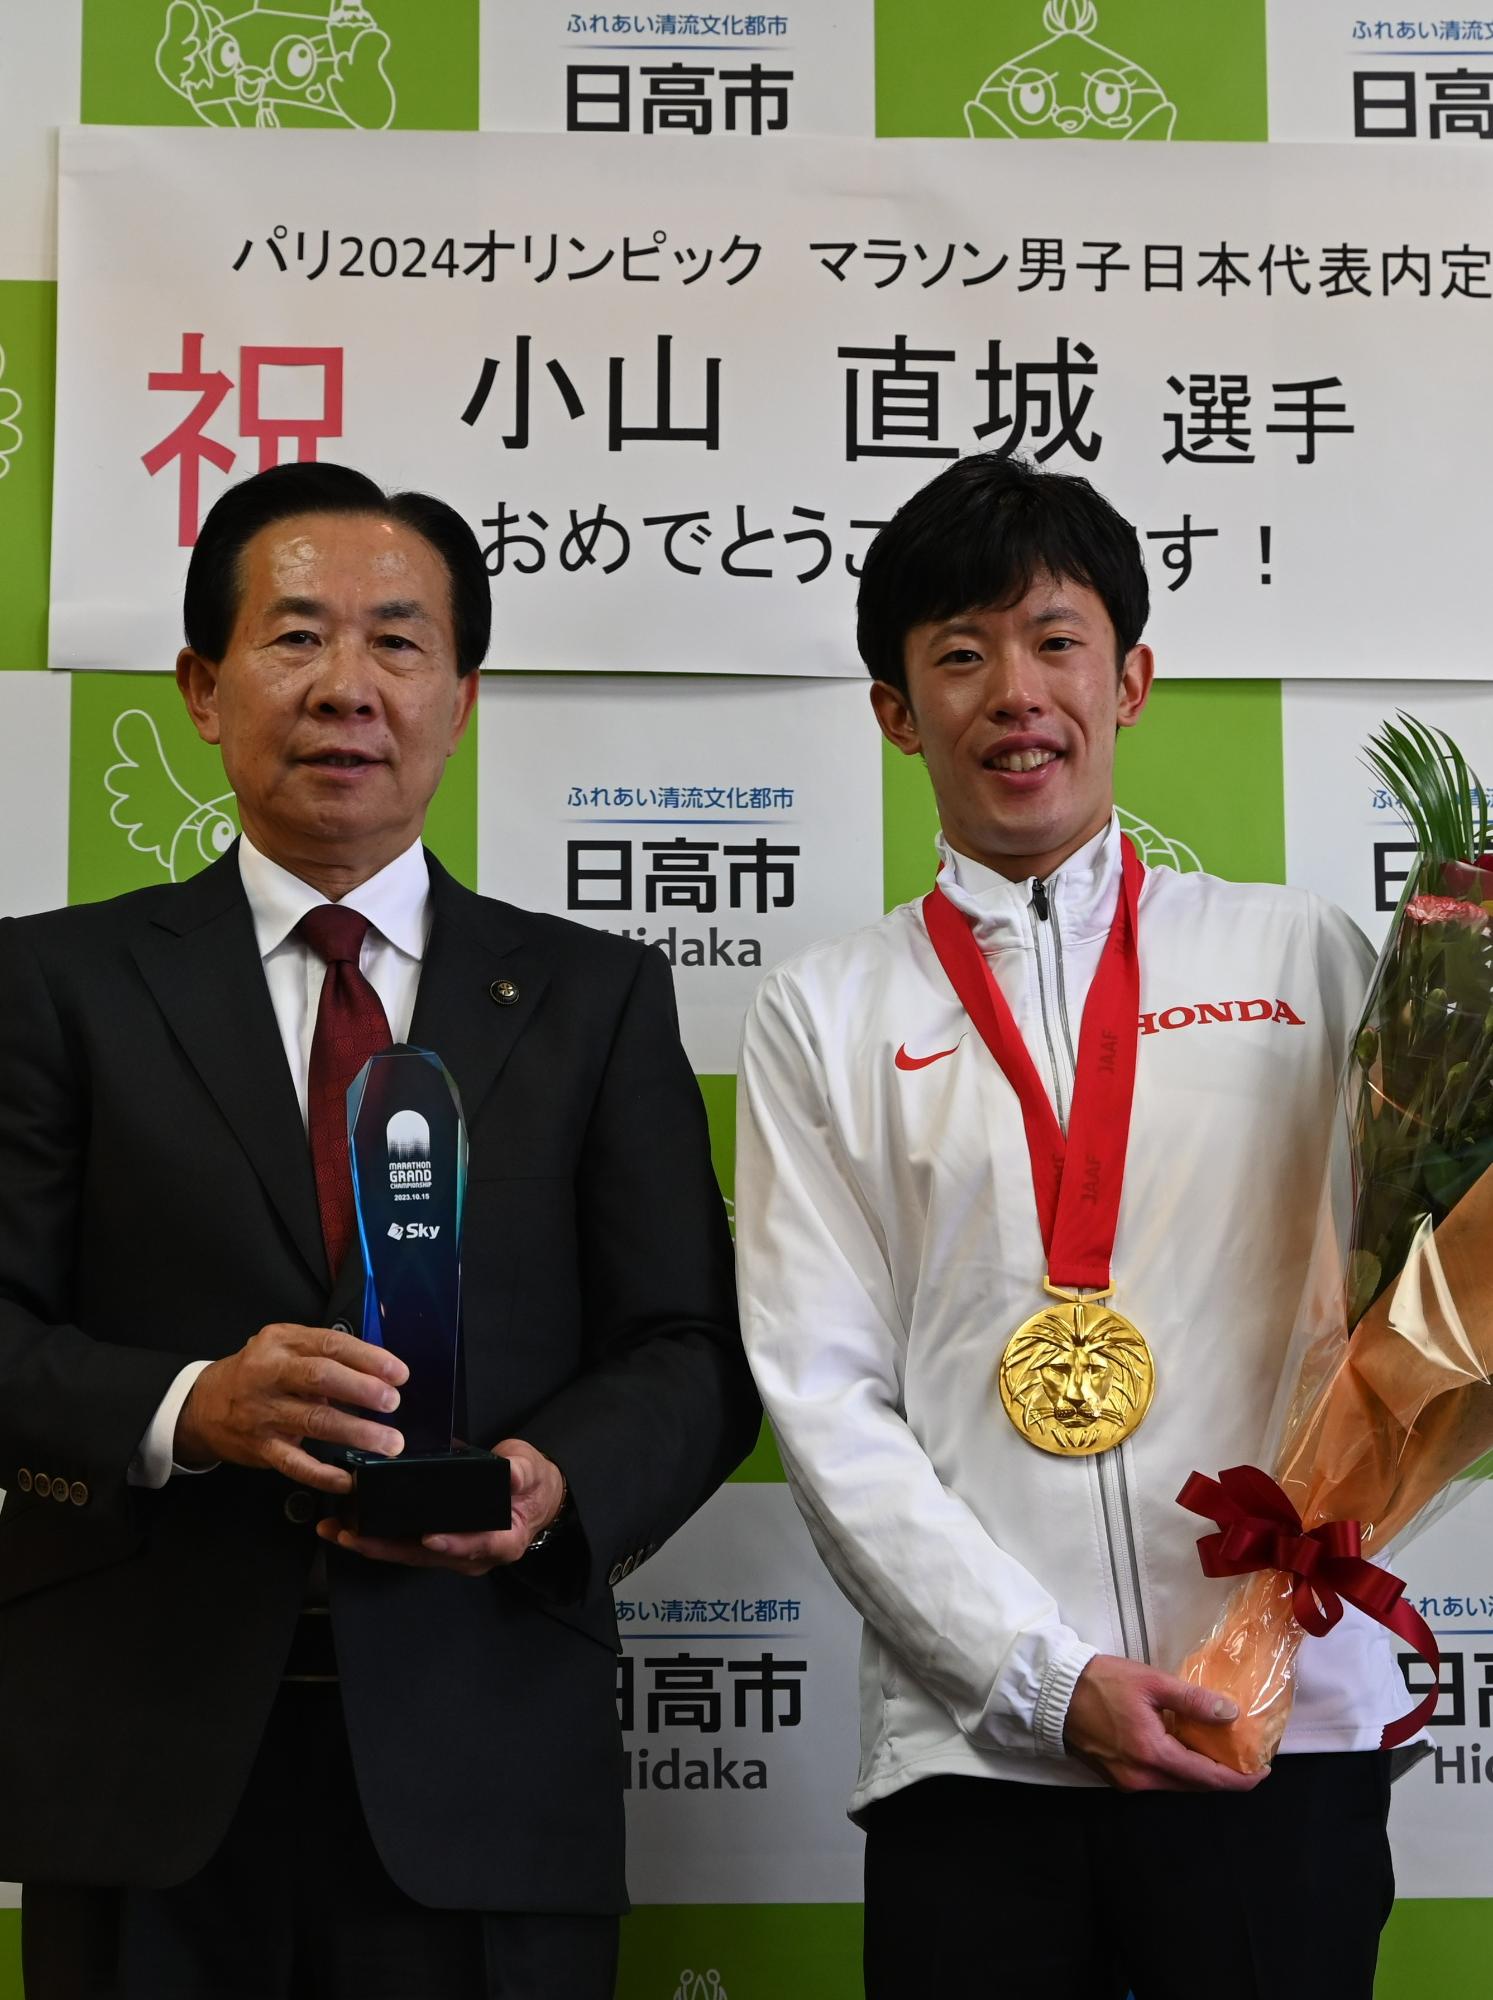 パリ・オリンピックのマラソン日本代表に内定した喜びを報告してくださった小山直城選手と谷ケ崎市長